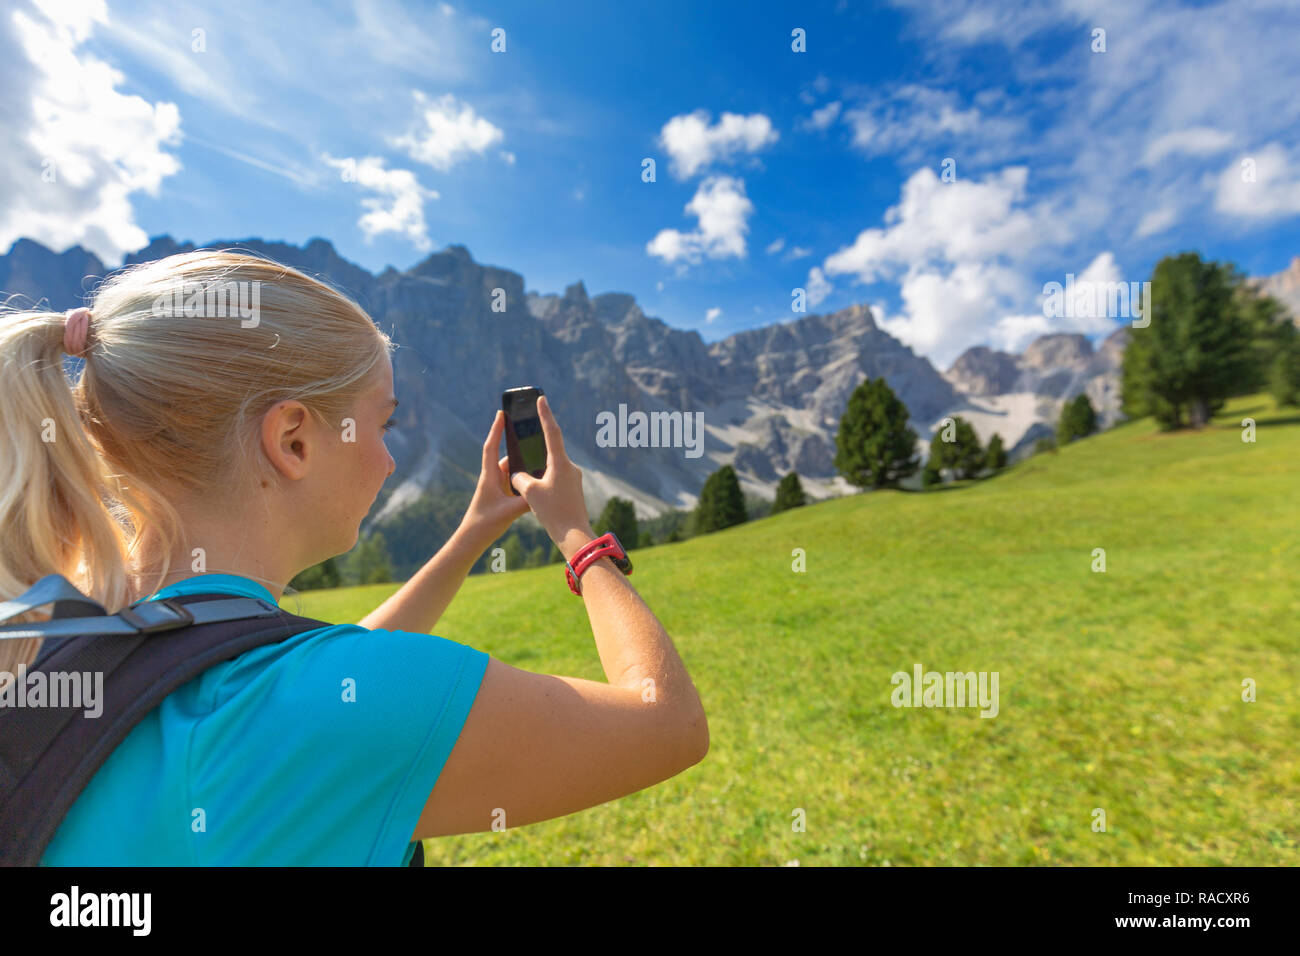 Ragazzina prende una foto con uno smartphone, Longiaru, Val Badia Alto Adige, Dolomiti, Italia, Europa Foto Stock